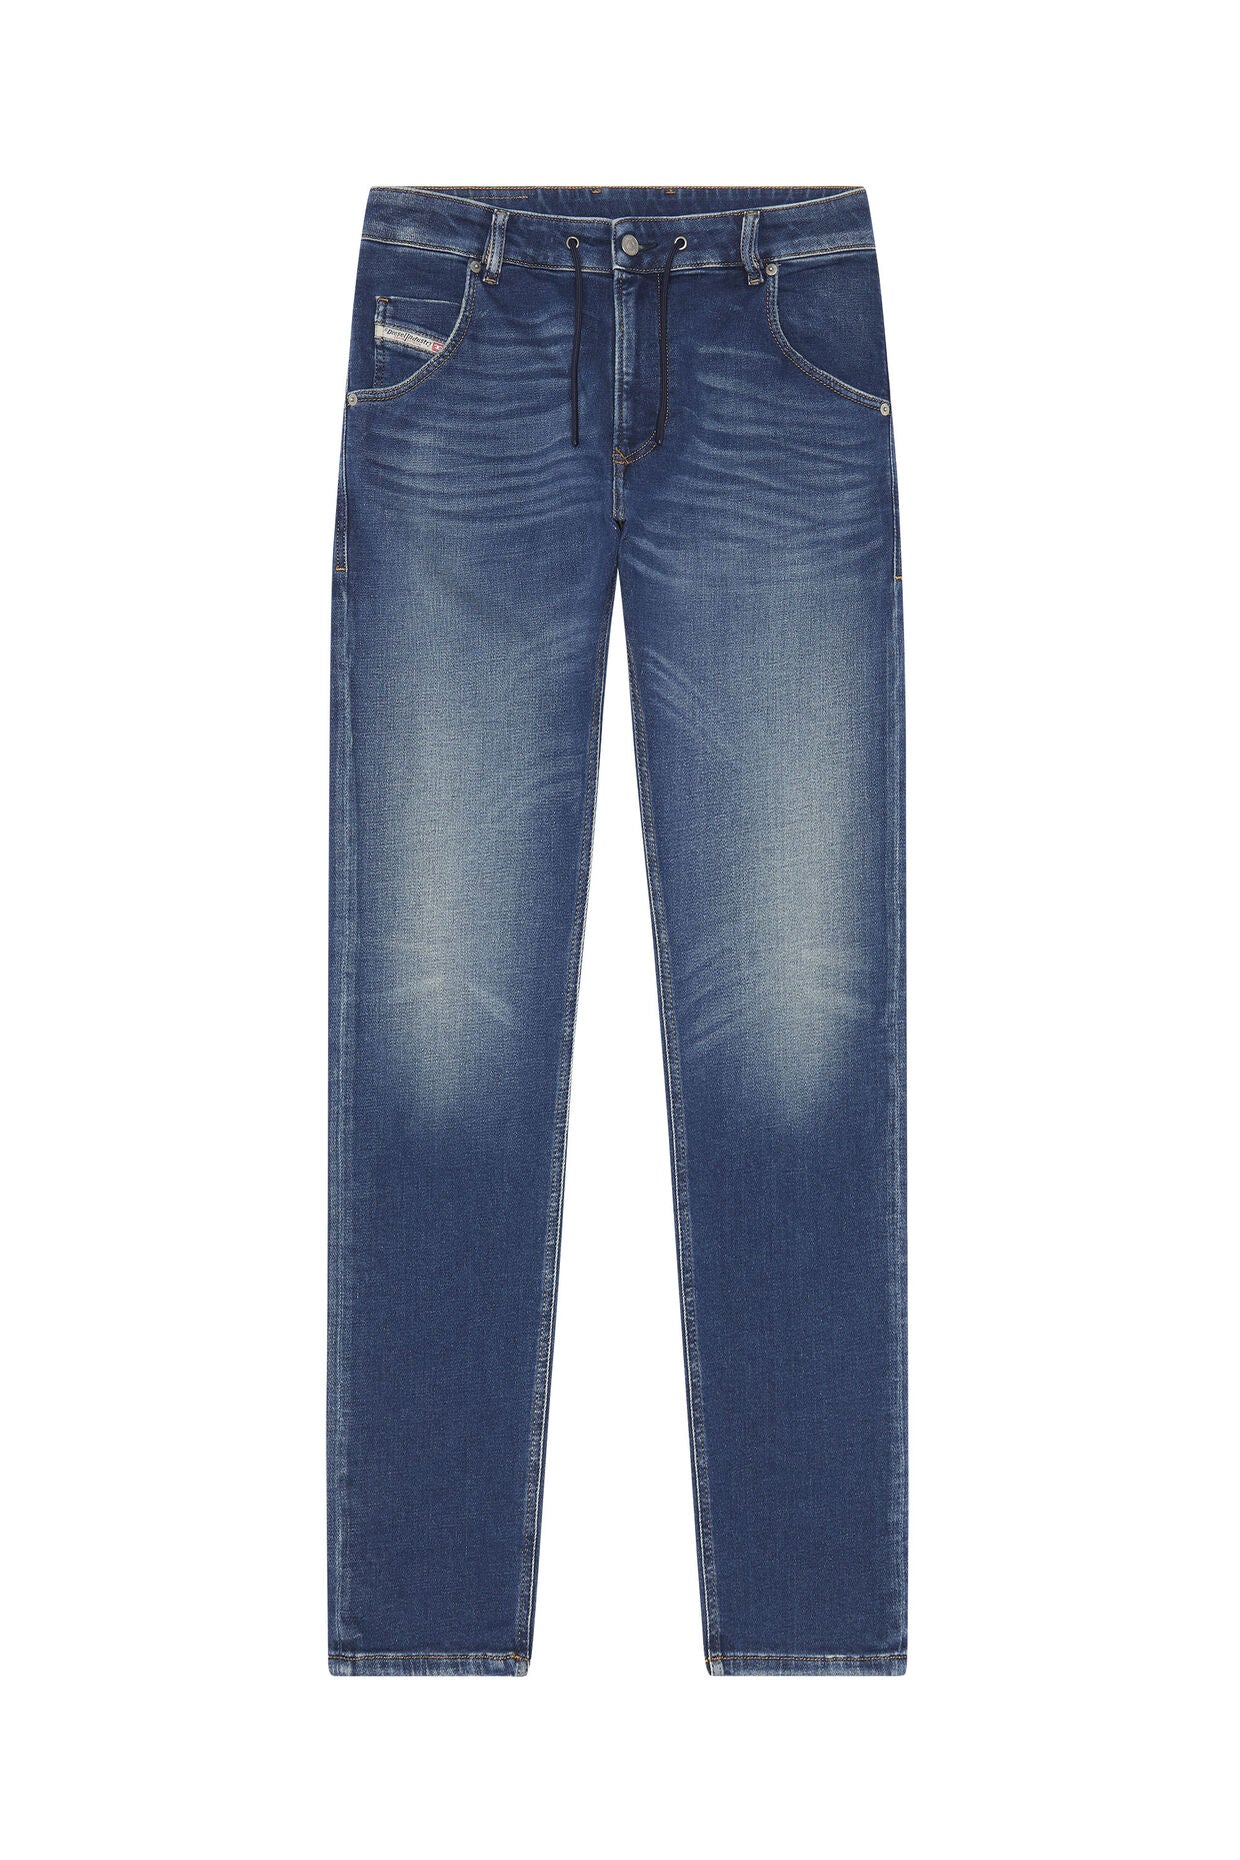 Krooley Joggjeans 068AZ Tapered Medium Blue Jeans